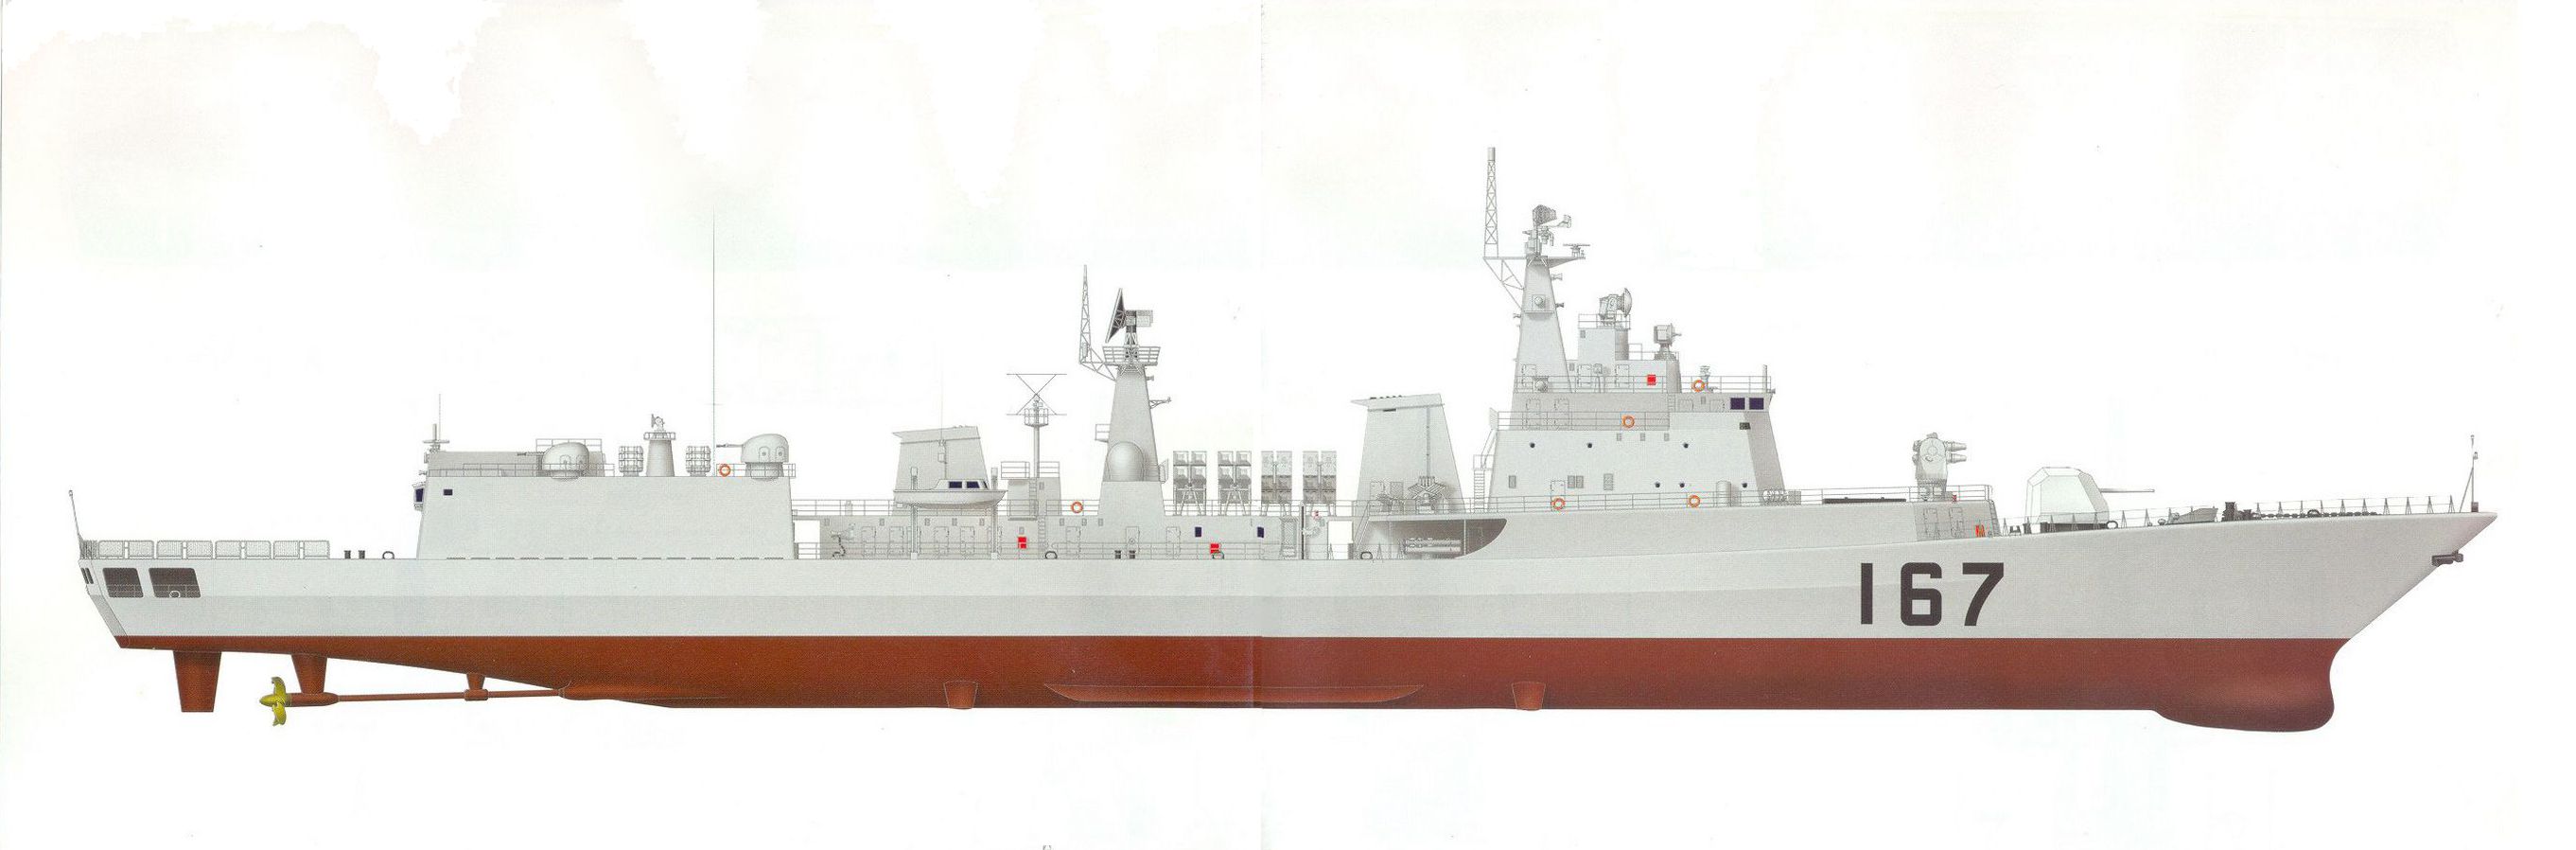 1706455372 629 Shenzhen DDG 167 Type 051B destroyer